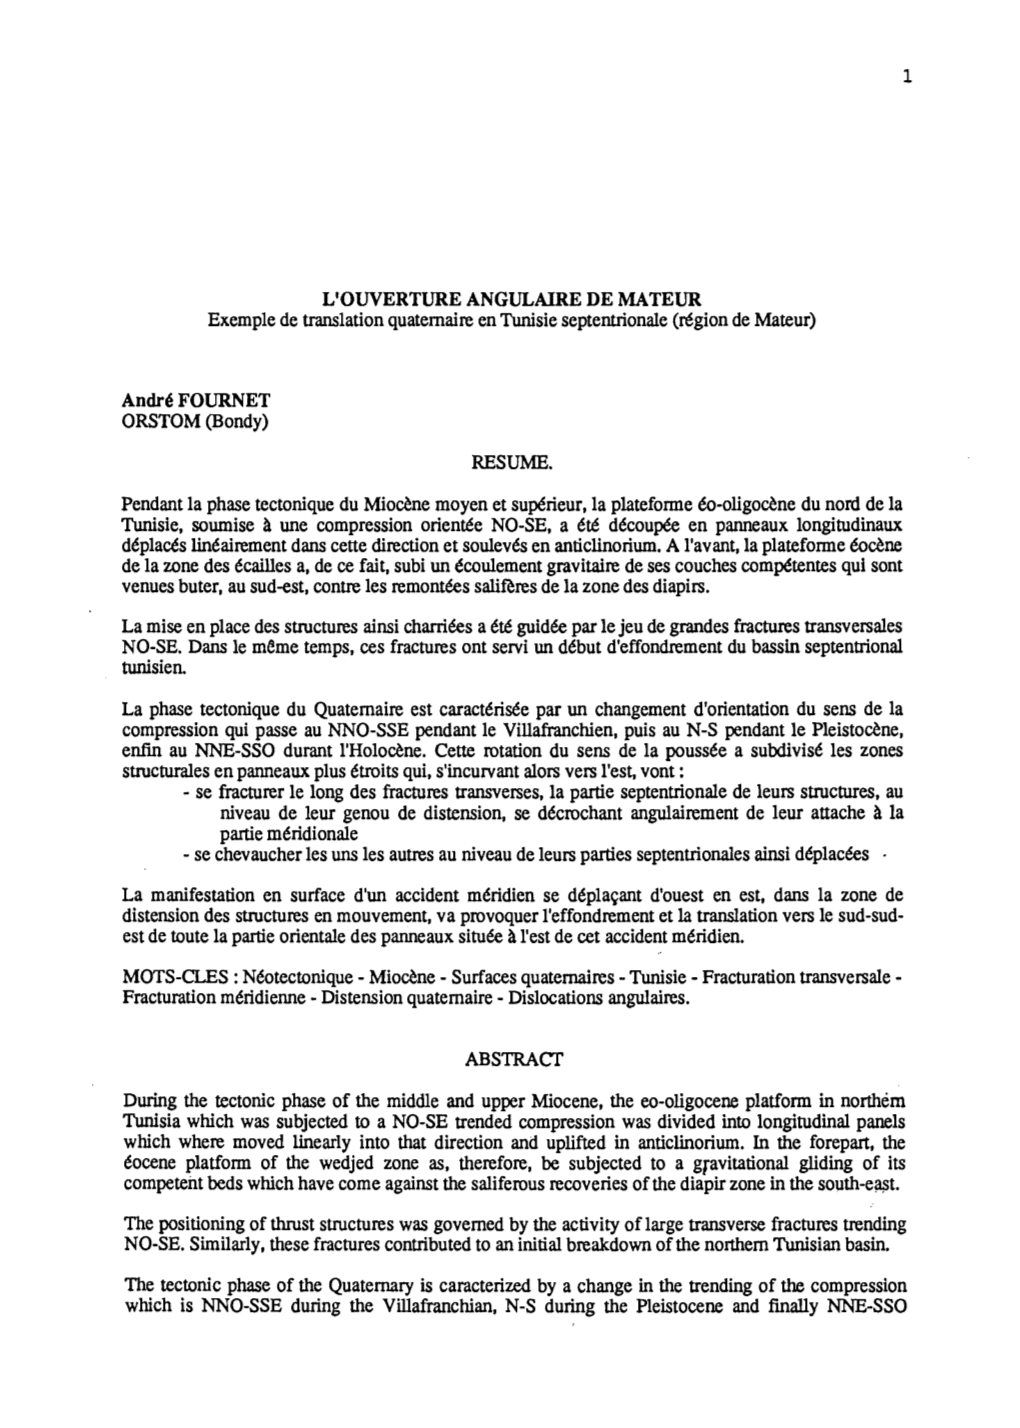 L'ouverture Angulaire De Mateur : Exemple De Translation Quaternaire En Tunisie Septentrionale (Région De Mateur) Bondy : ORSTOM, 21 P